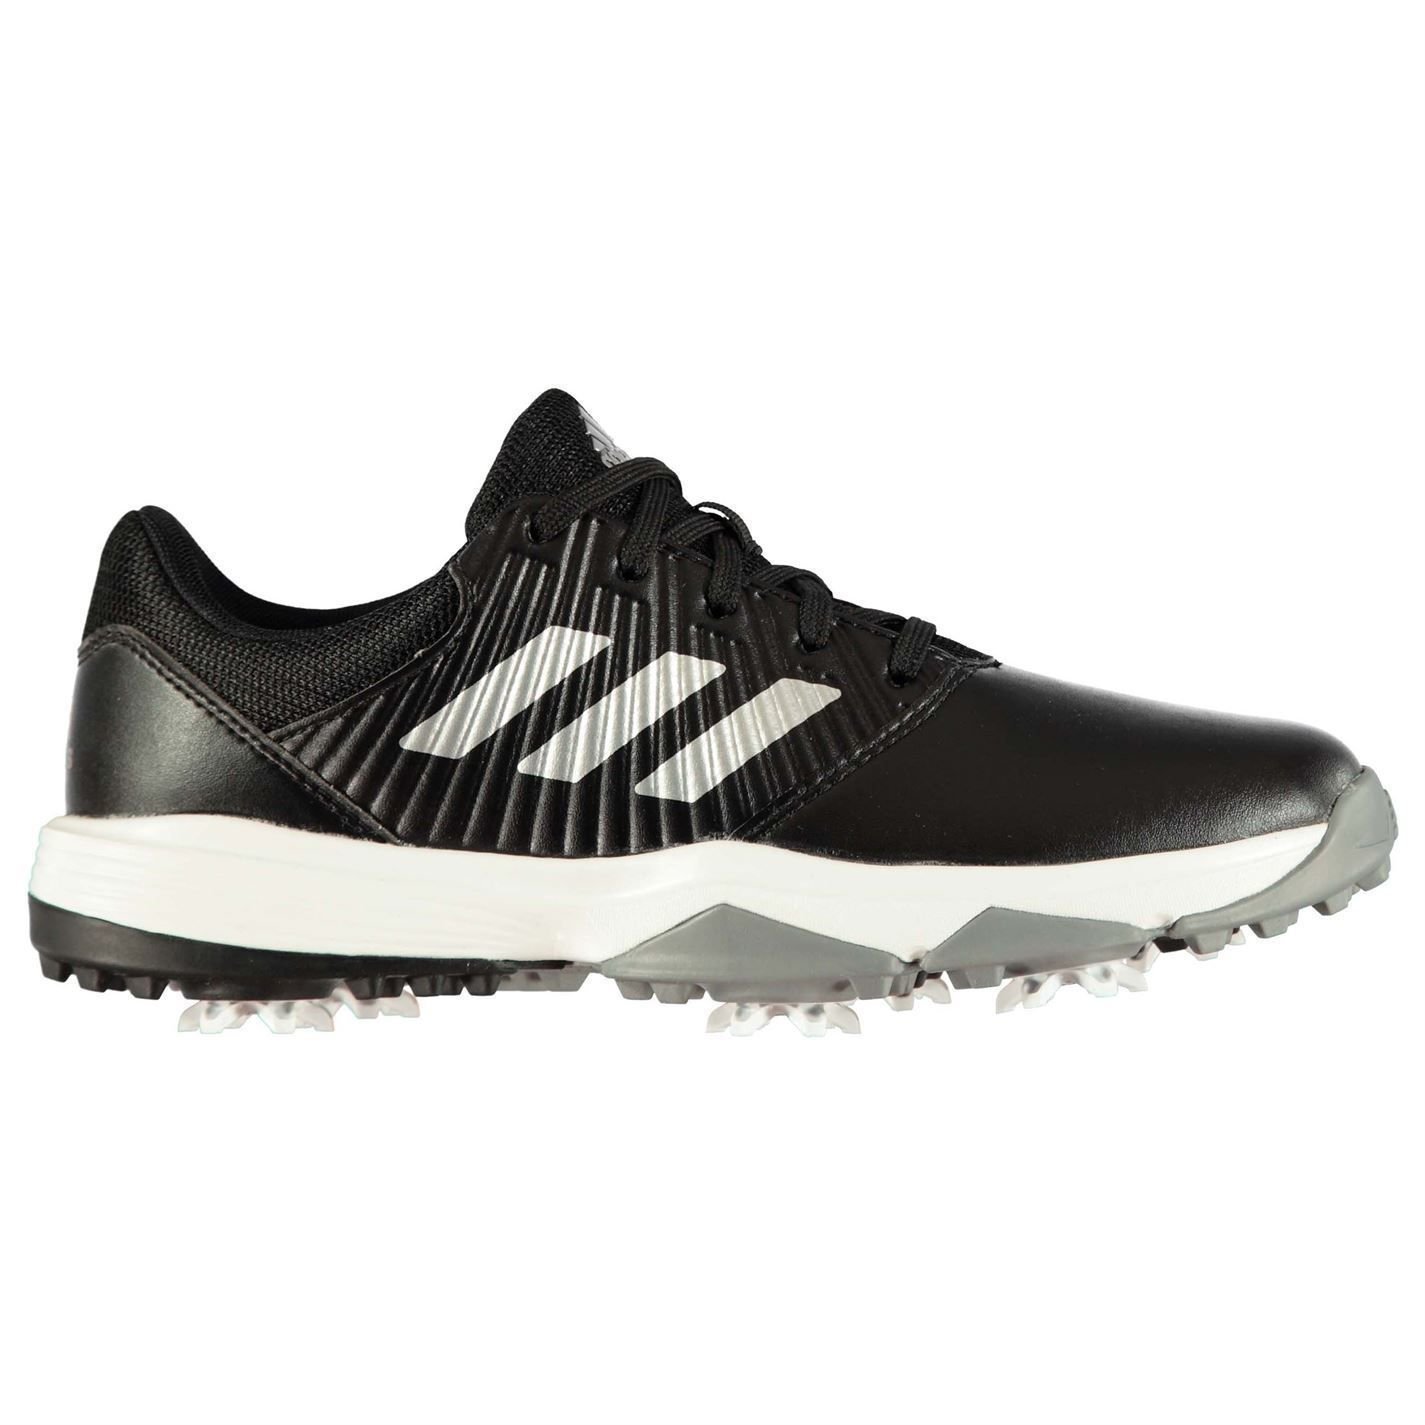 Παιδικό Παπούτσι για Γκολφ Adidas CP Traxion Junior Golf Shoes Core Black/Silver Metal/White UK 2